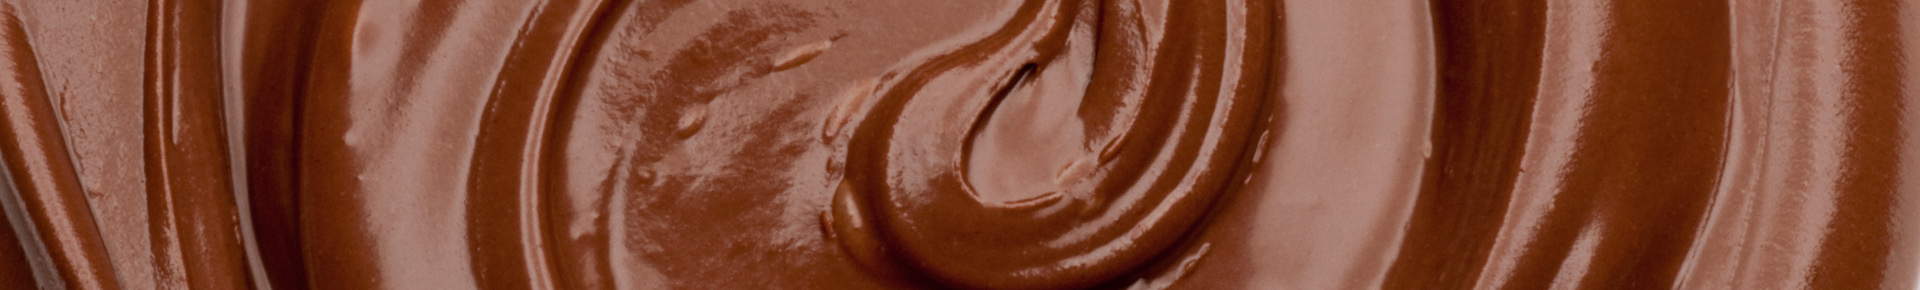 Lasciati conquistare dalle mousse al cioccolato con sfoglie di fondente Nero Perugina!